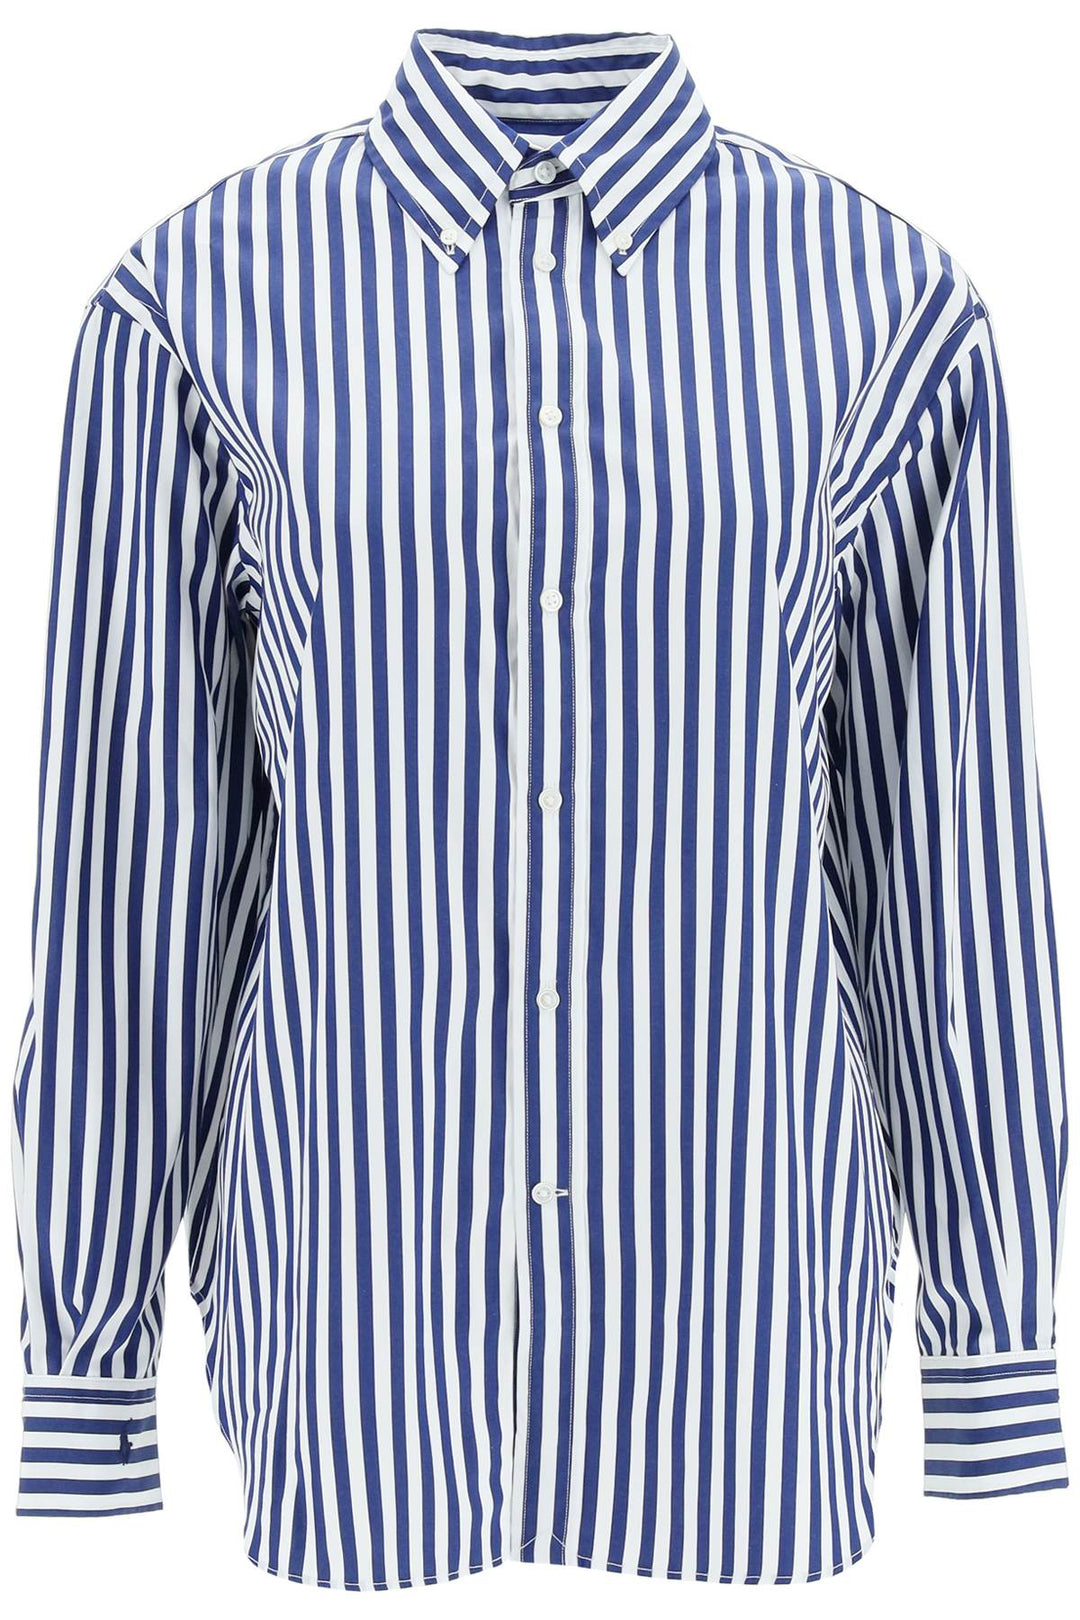 Camicia In Cotone A Righe - Polo Ralph Lauren - Donna